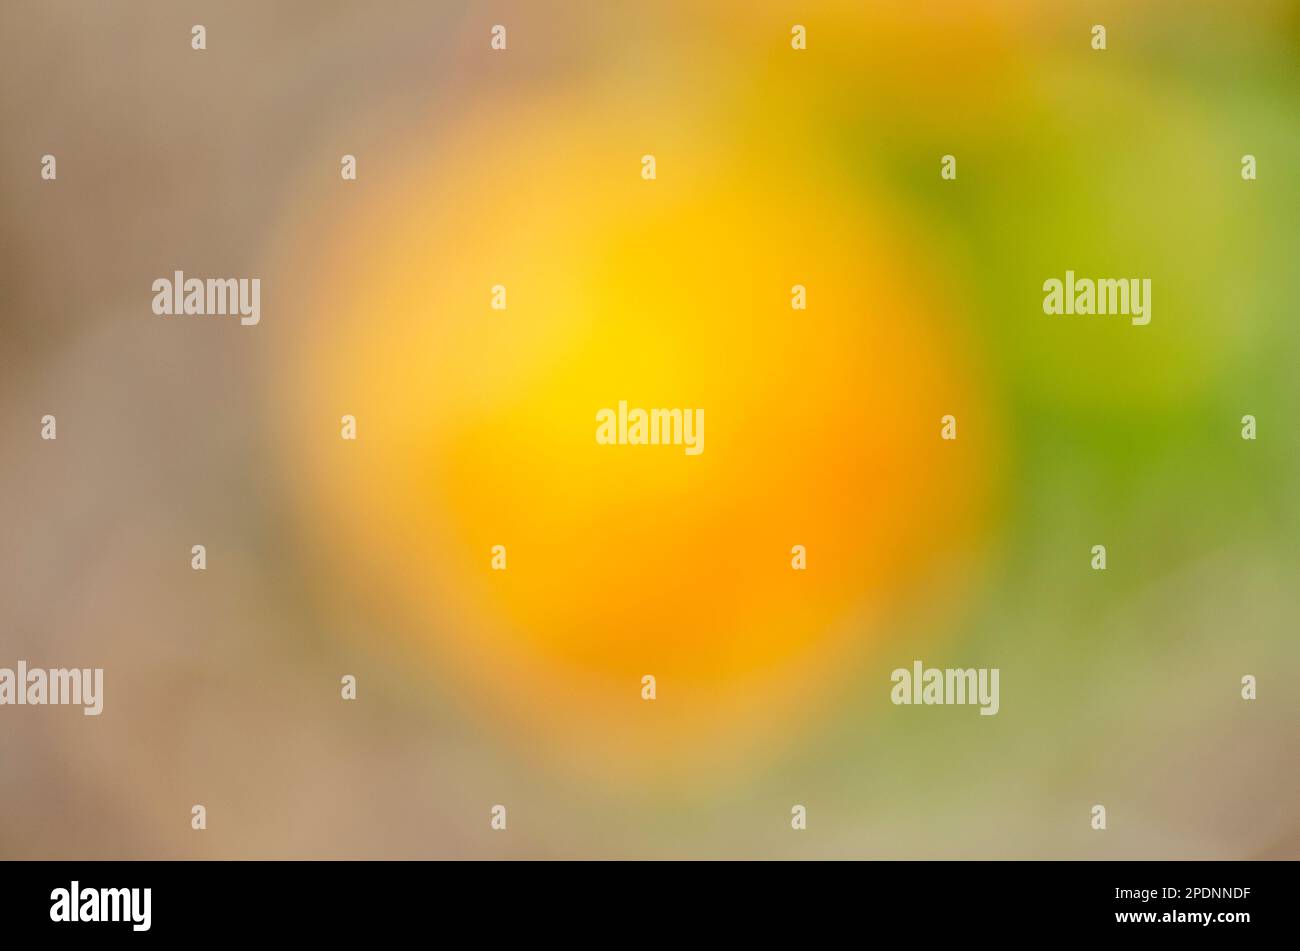 sfondo astratto giallo, arancione, verde in stile analogico Foto Stock